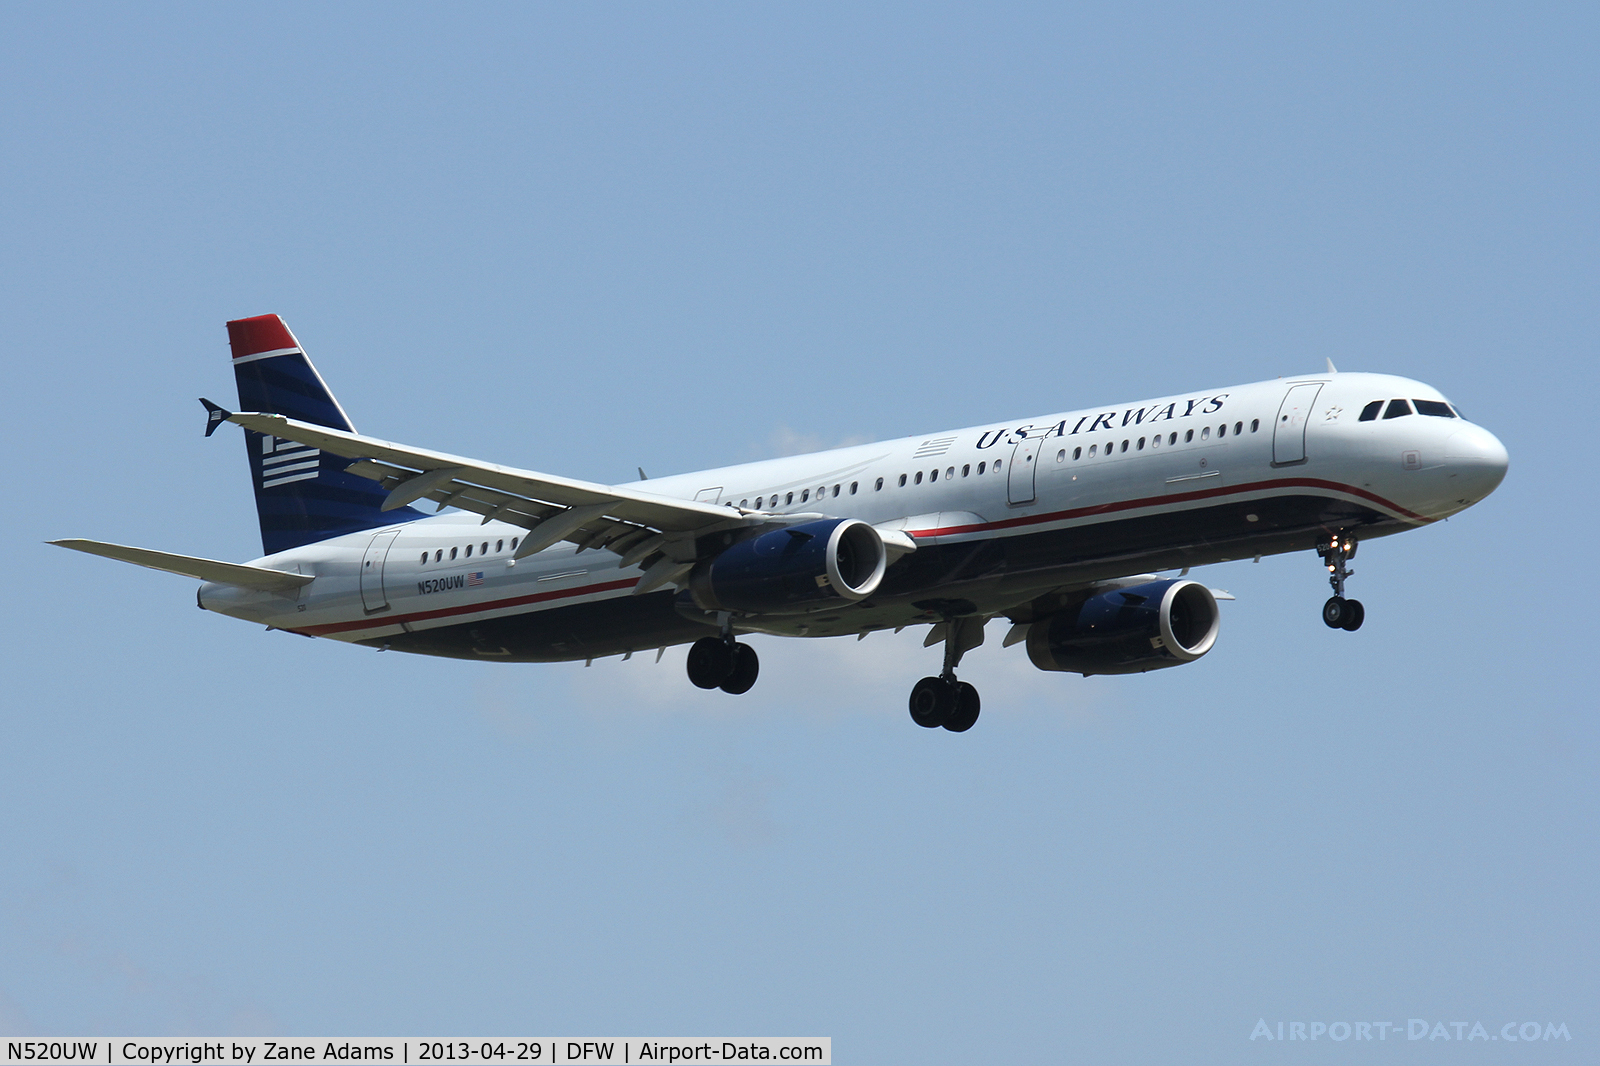 N520UW, 2009 Airbus A321-231 C/N 3924, US Airways landing at DFW Airport